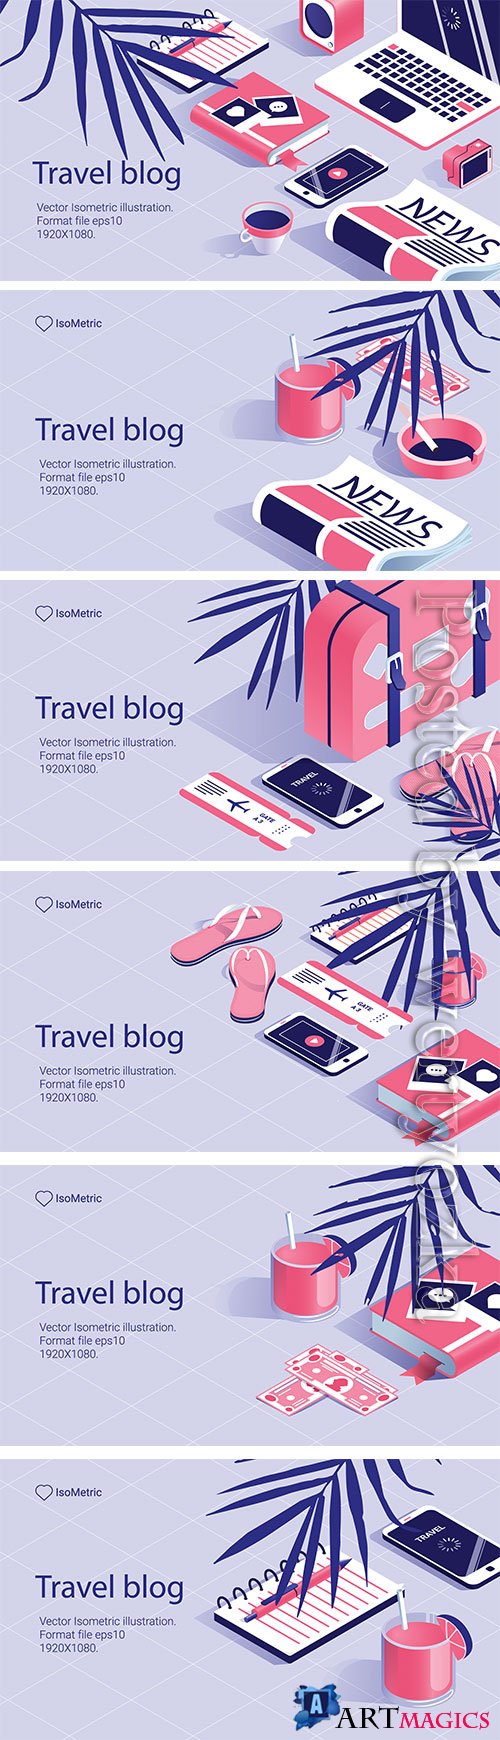 Travel bloger, illustration work tabel, banners set